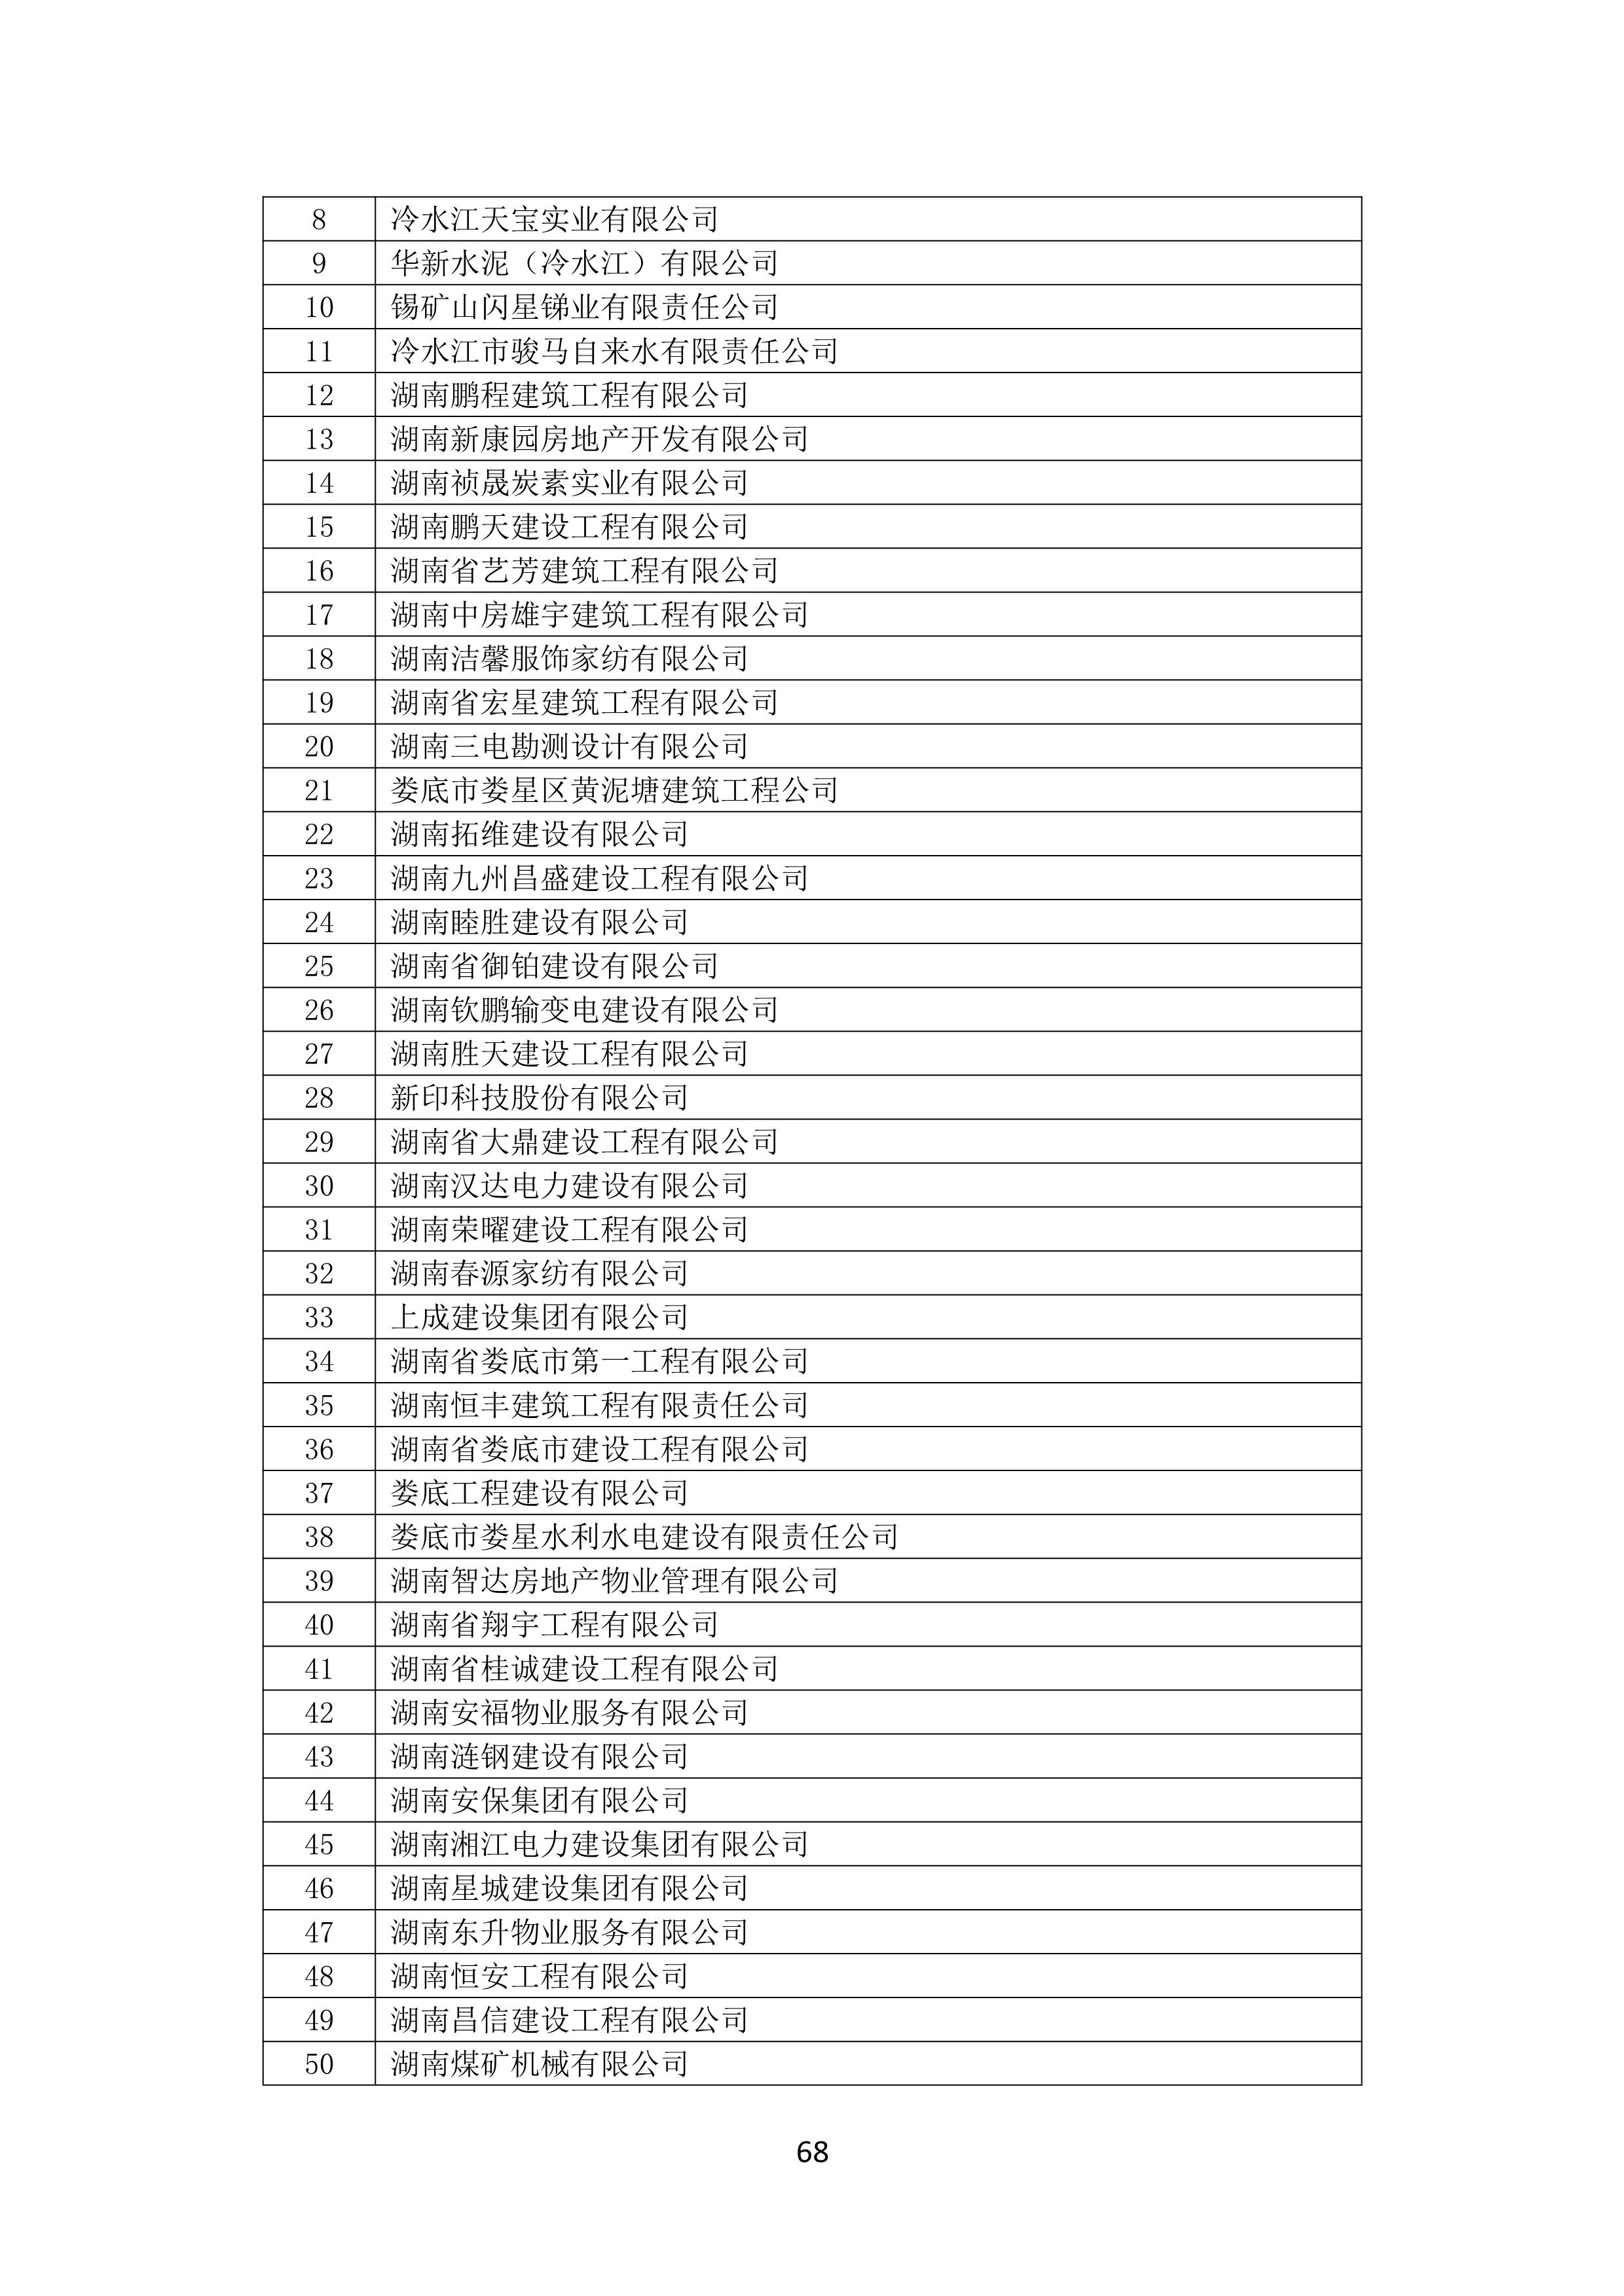 2021 年(nián)度湖南省守合同重信用企業名單_69.png